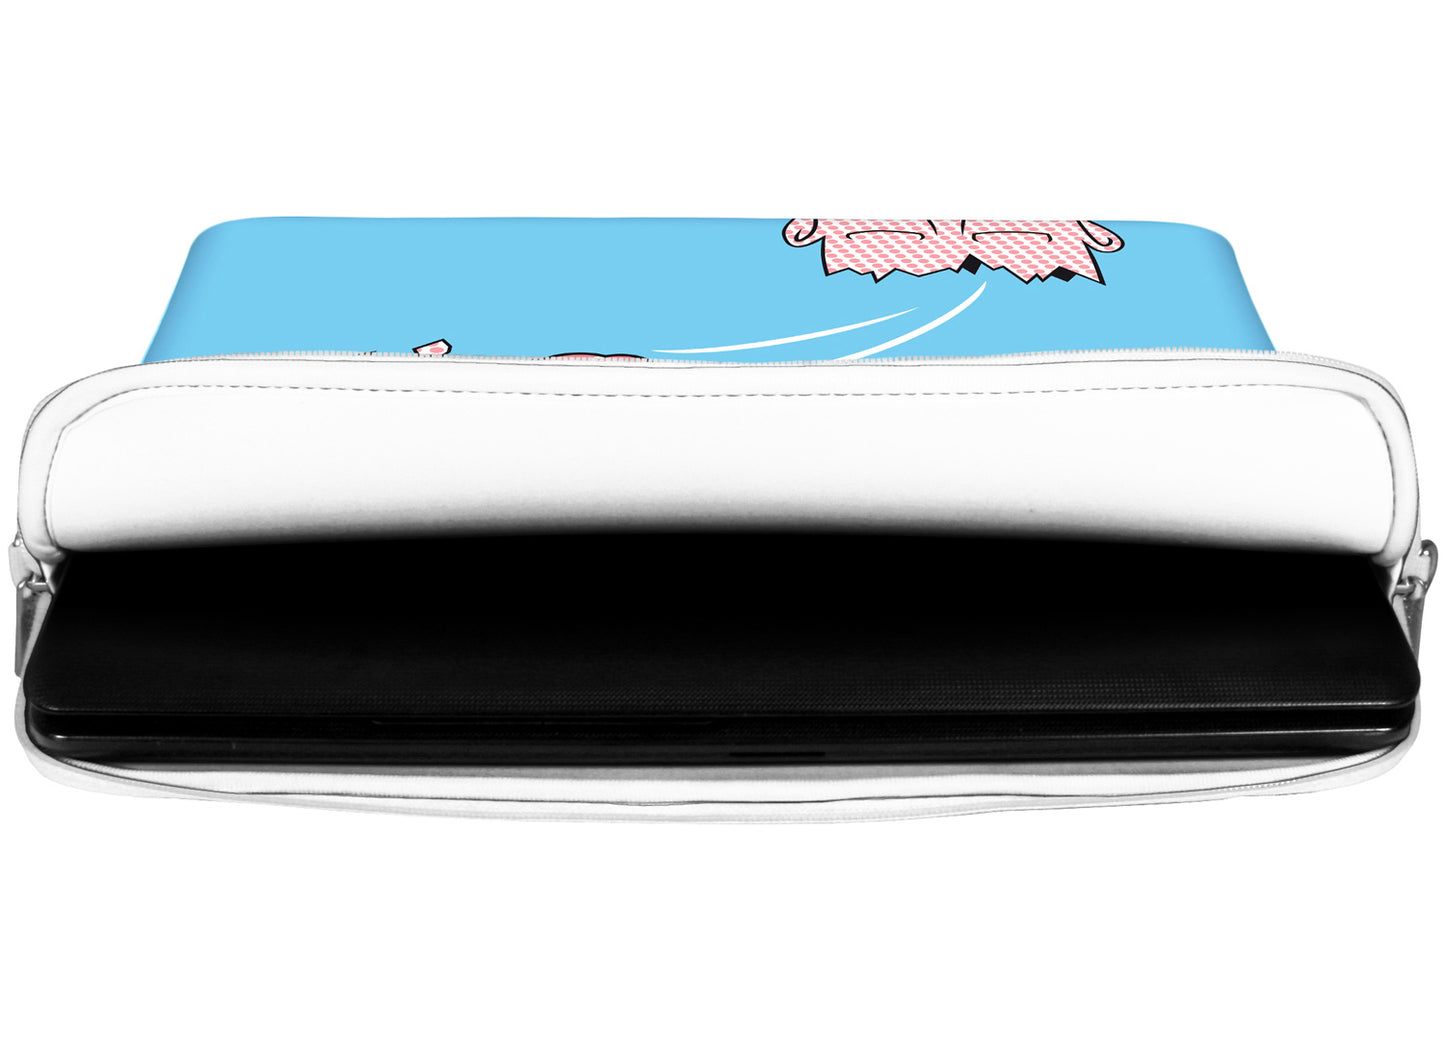 Innenansicht mit Schutzlippen der LS169 Timeout Designer Laptop Tasche in weiß aus wasserabweisendem Neopren